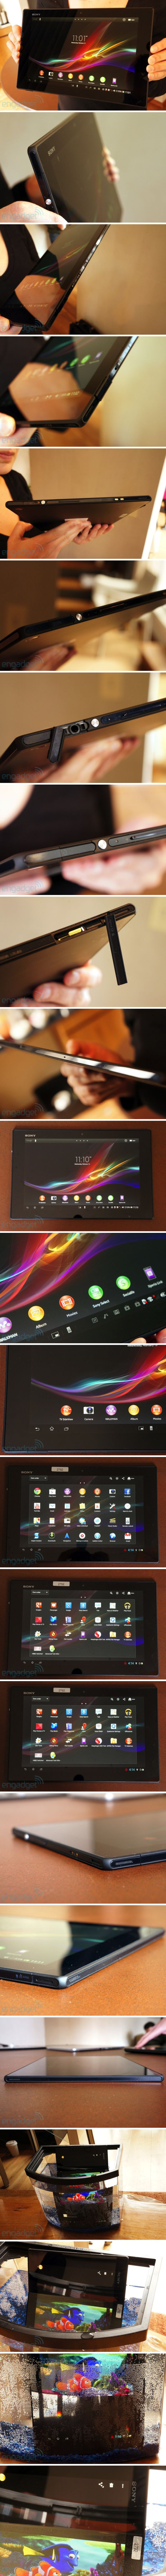 MWC: Sony Xperia Tablet Z (képek és videó)